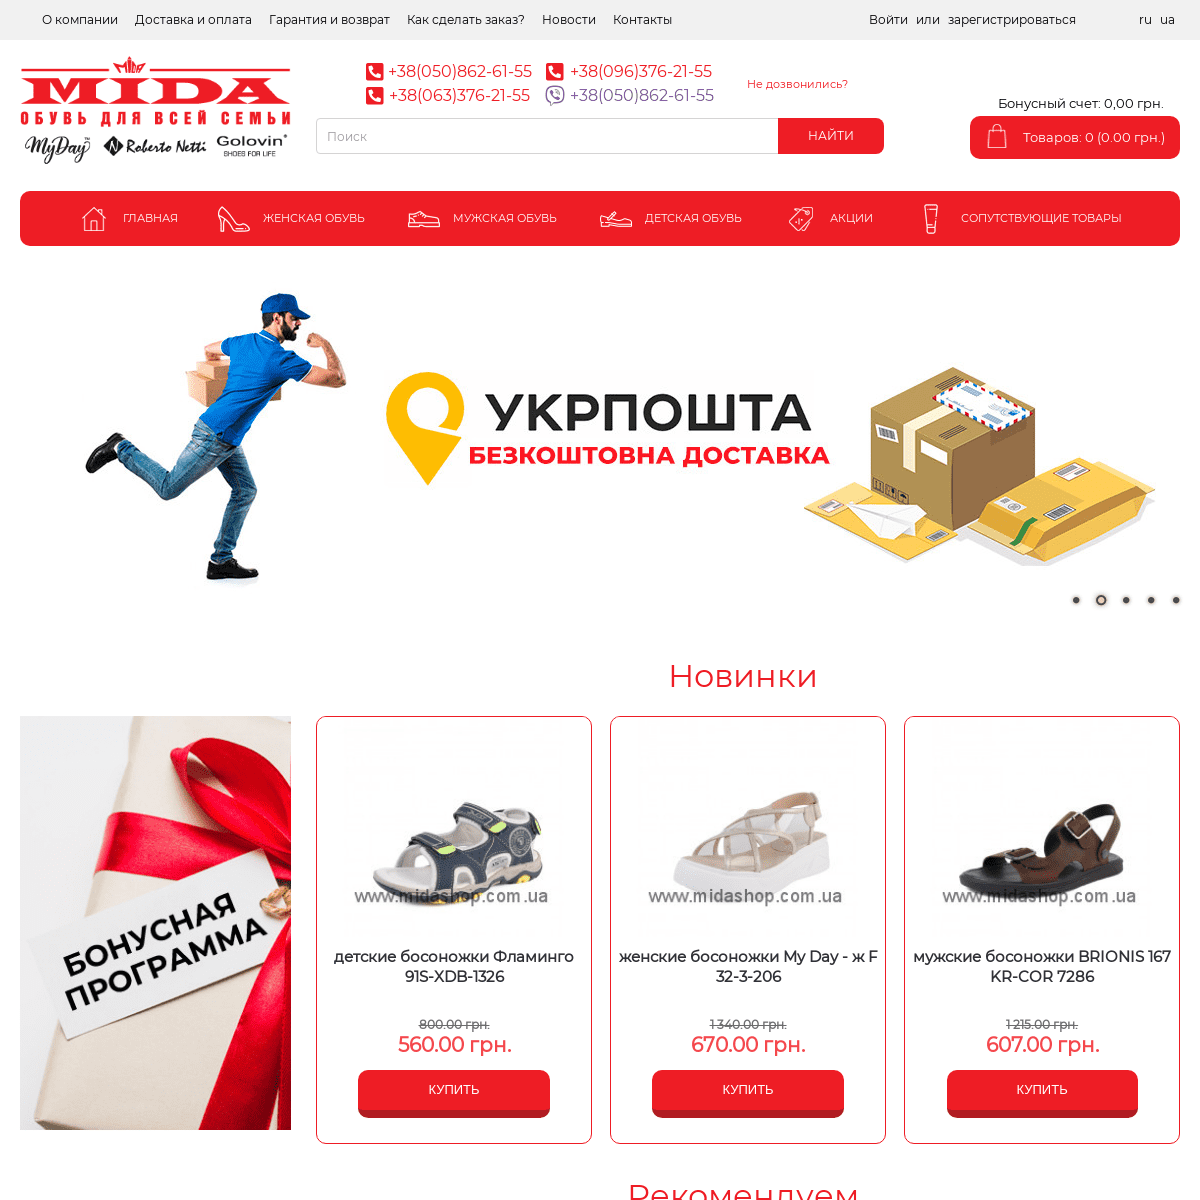 Купить обувь недорого в интернет-магазине MidaShop (Мида Шоп), заказать обувь по интернету в Украине, обувь Мида каталог